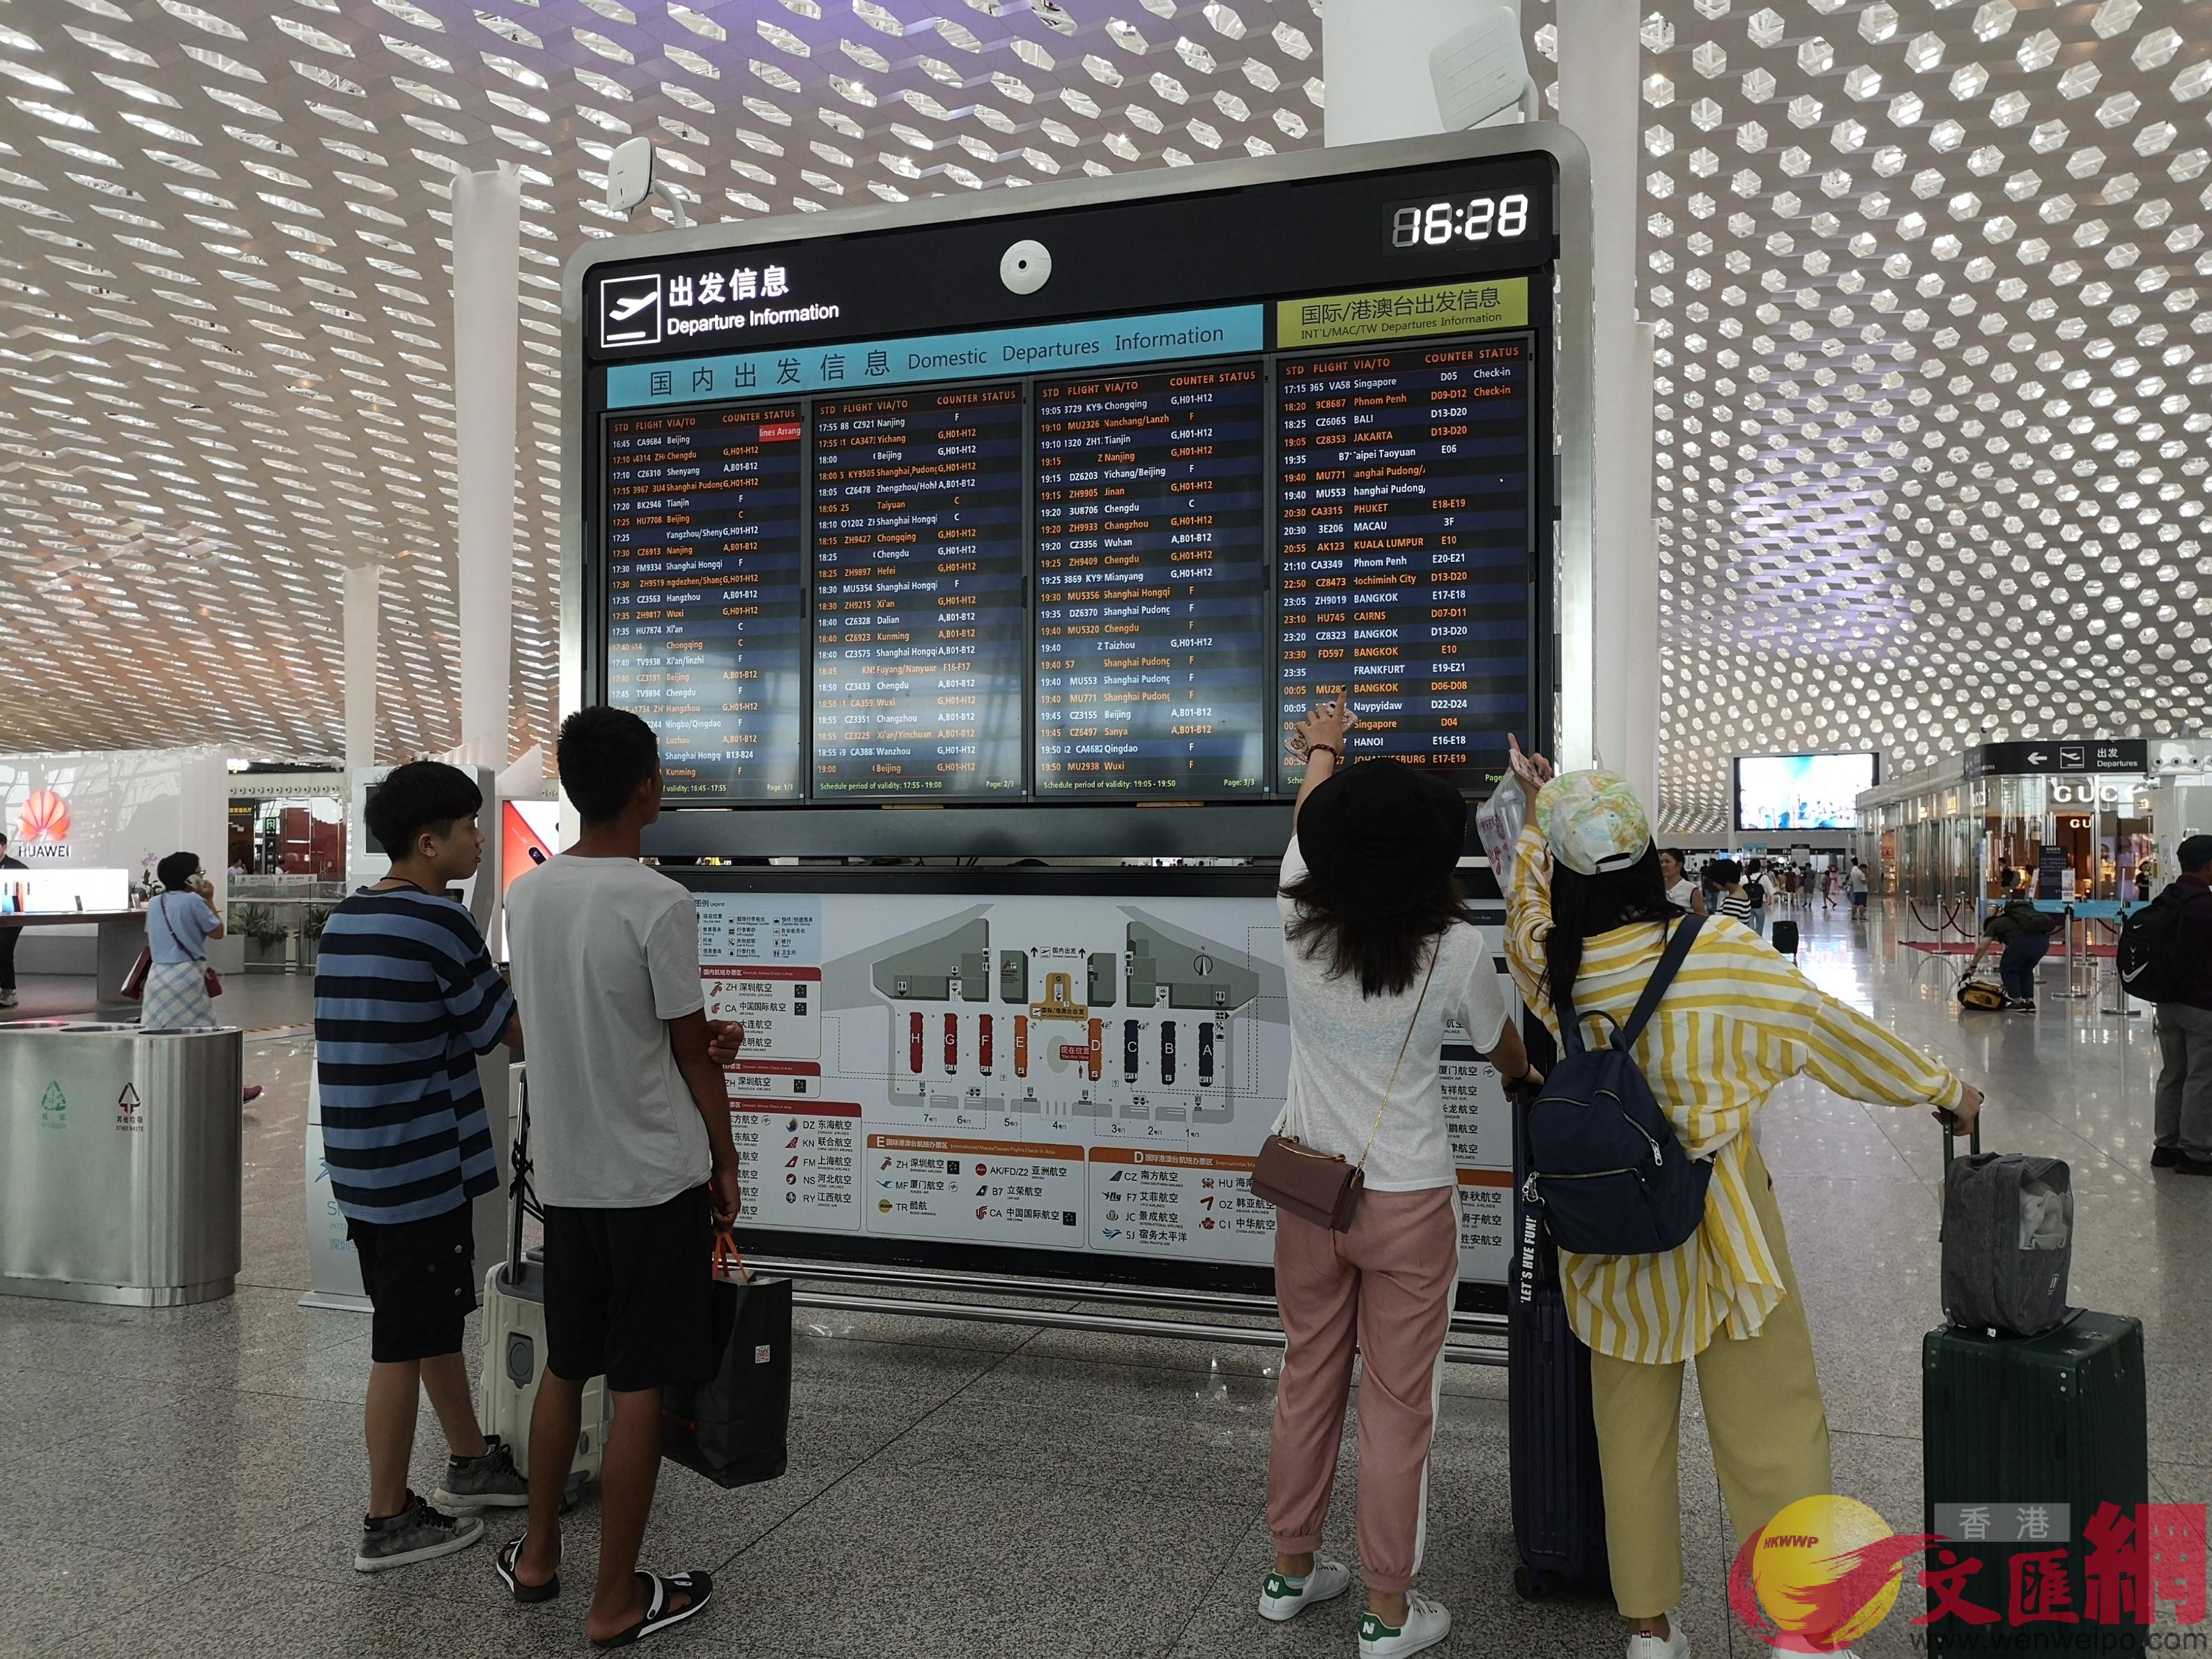 旅客在深圳機場航班信息前查看航班動態 ]記者郭若溪攝^